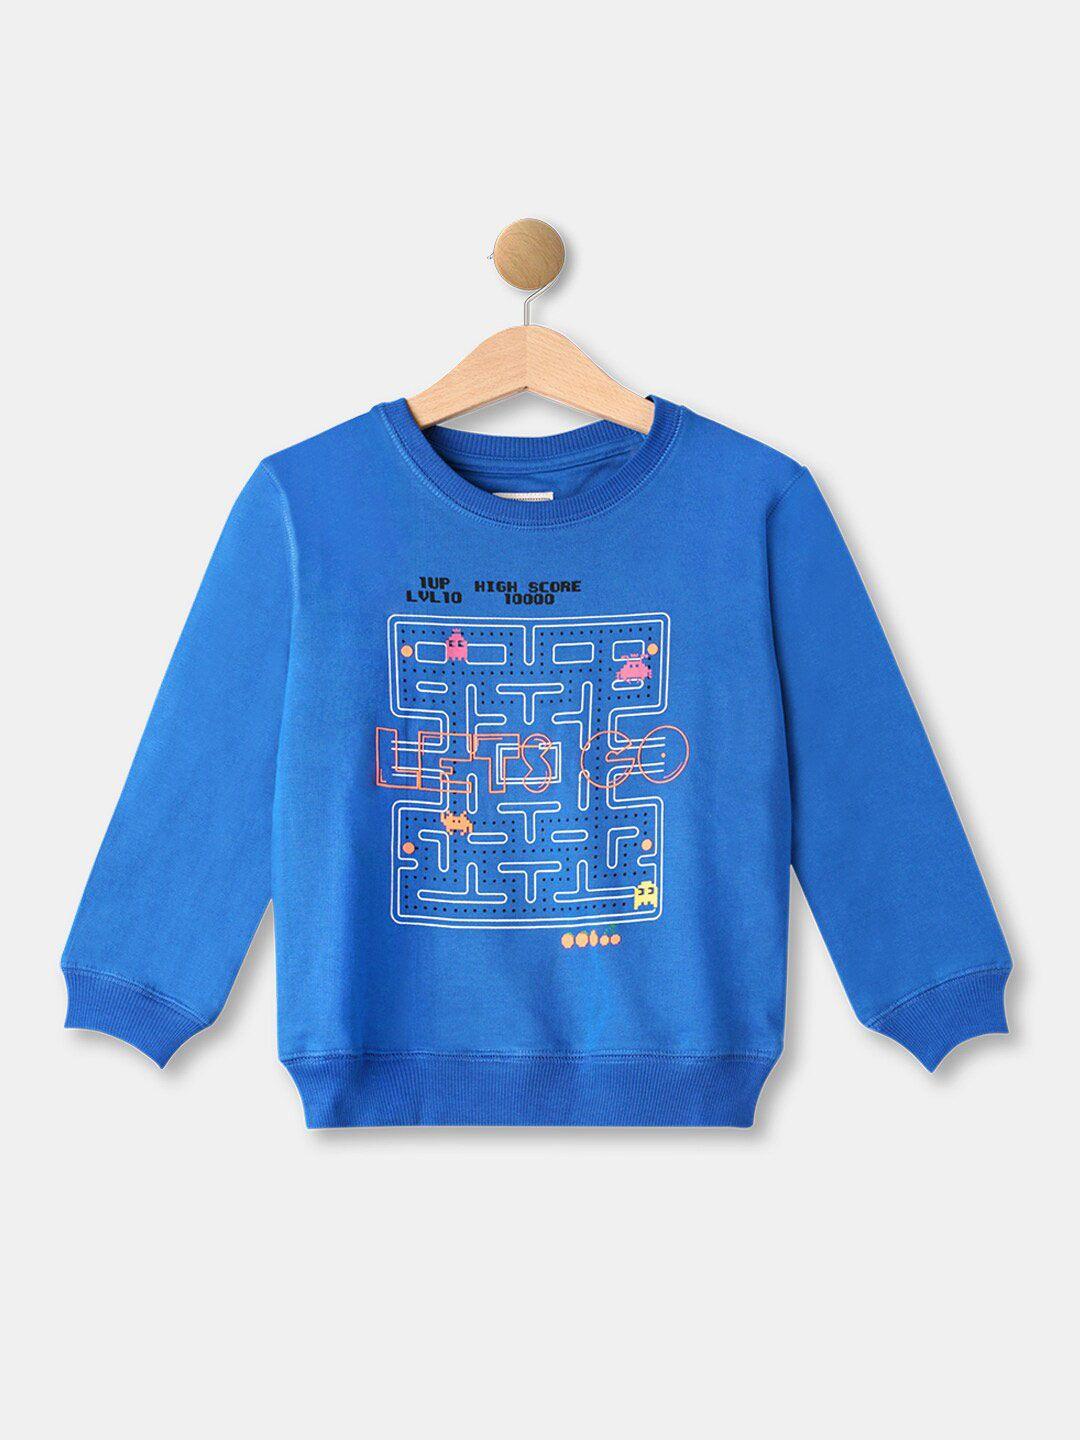 r&b boys cotton blue printed sweatshirt